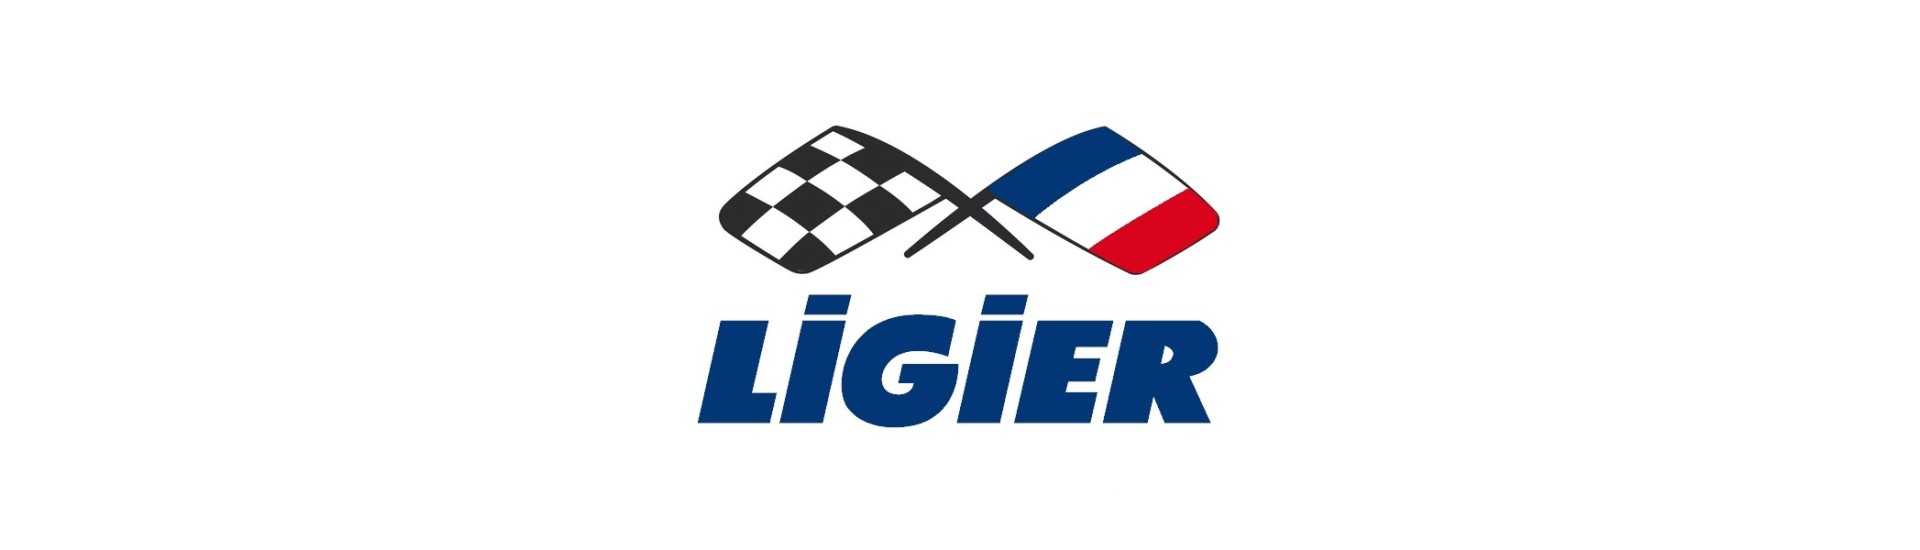 Selo de lâmina ao melhor preço para o carro sem permissão Ligier